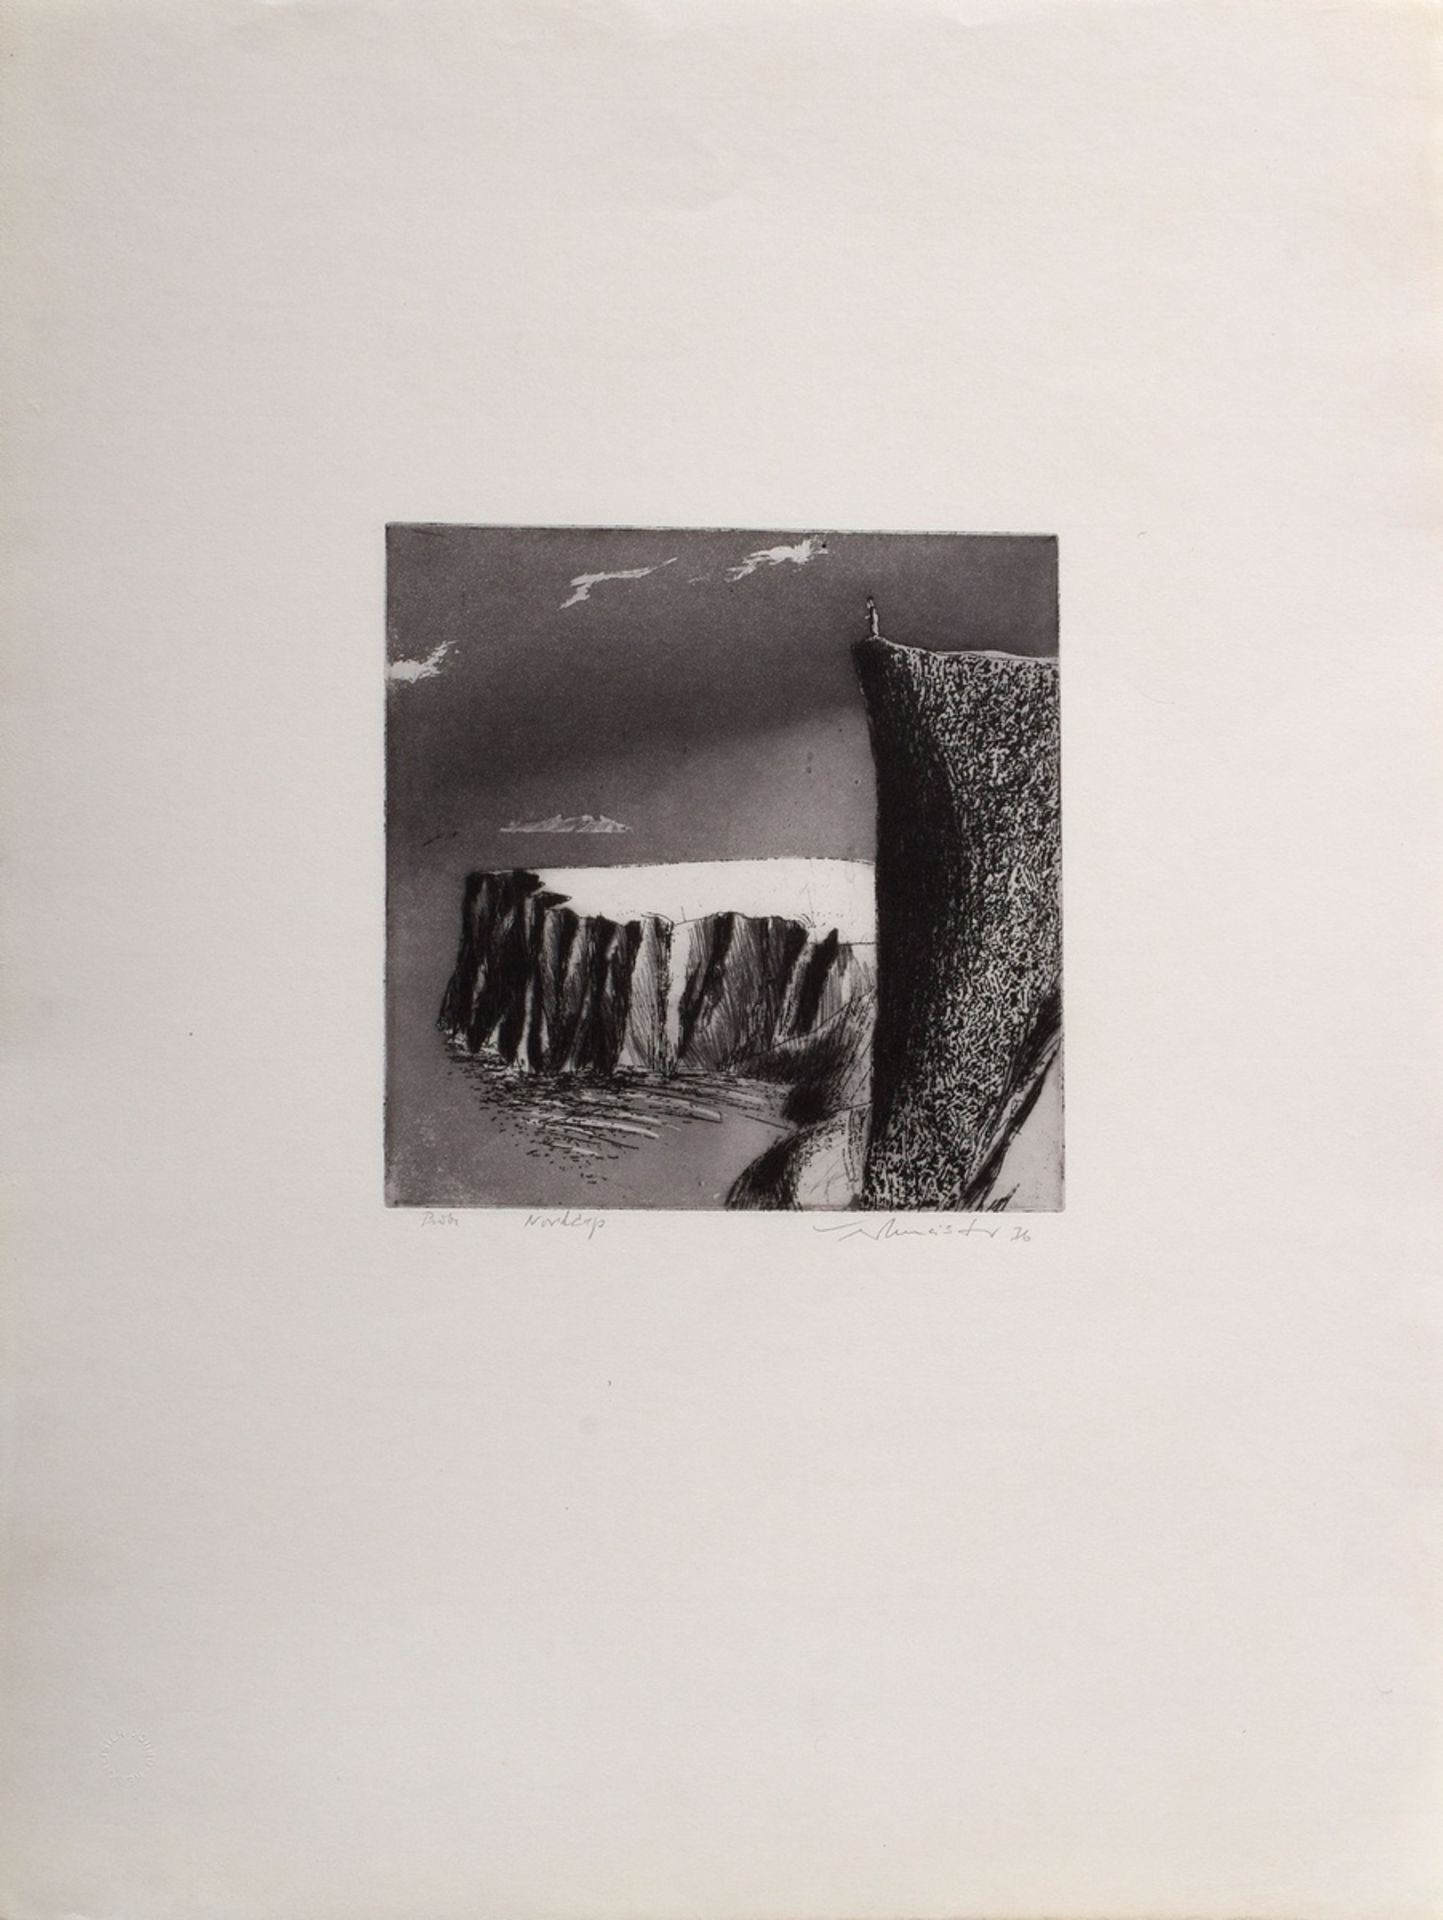 Werkmeister, Wolfgang (*1941) "Nordkap" 1976, etching, sample, b. sign./dat./inscr., cat. raisonné  - Image 2 of 3